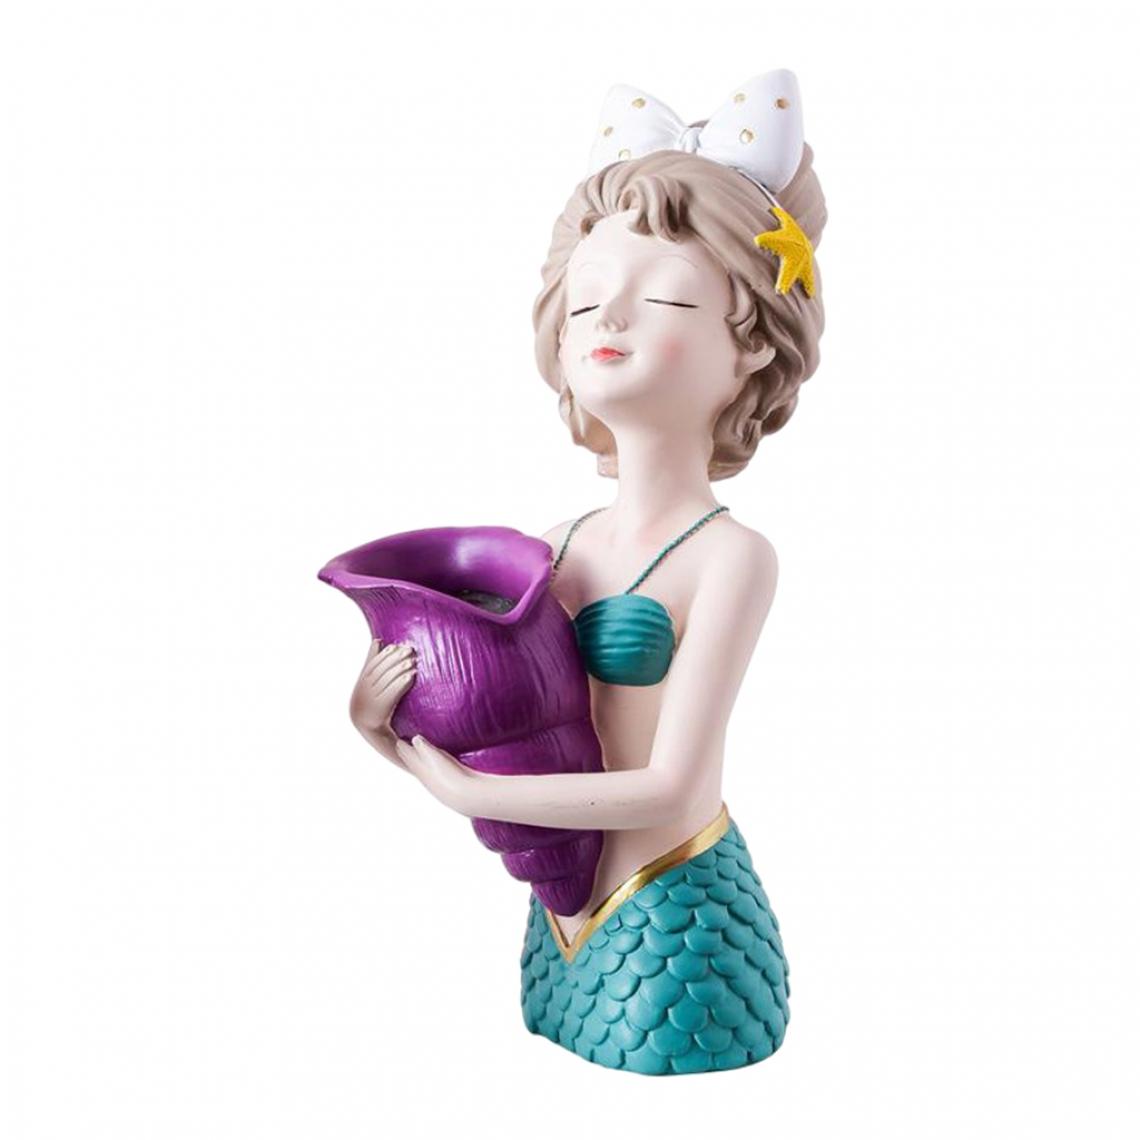 marque generique - Sculpture De Bureau à Domicile En Résine De Vase à Fleurs Sèches Fille Mignonne Mermaid_Blue - Vases